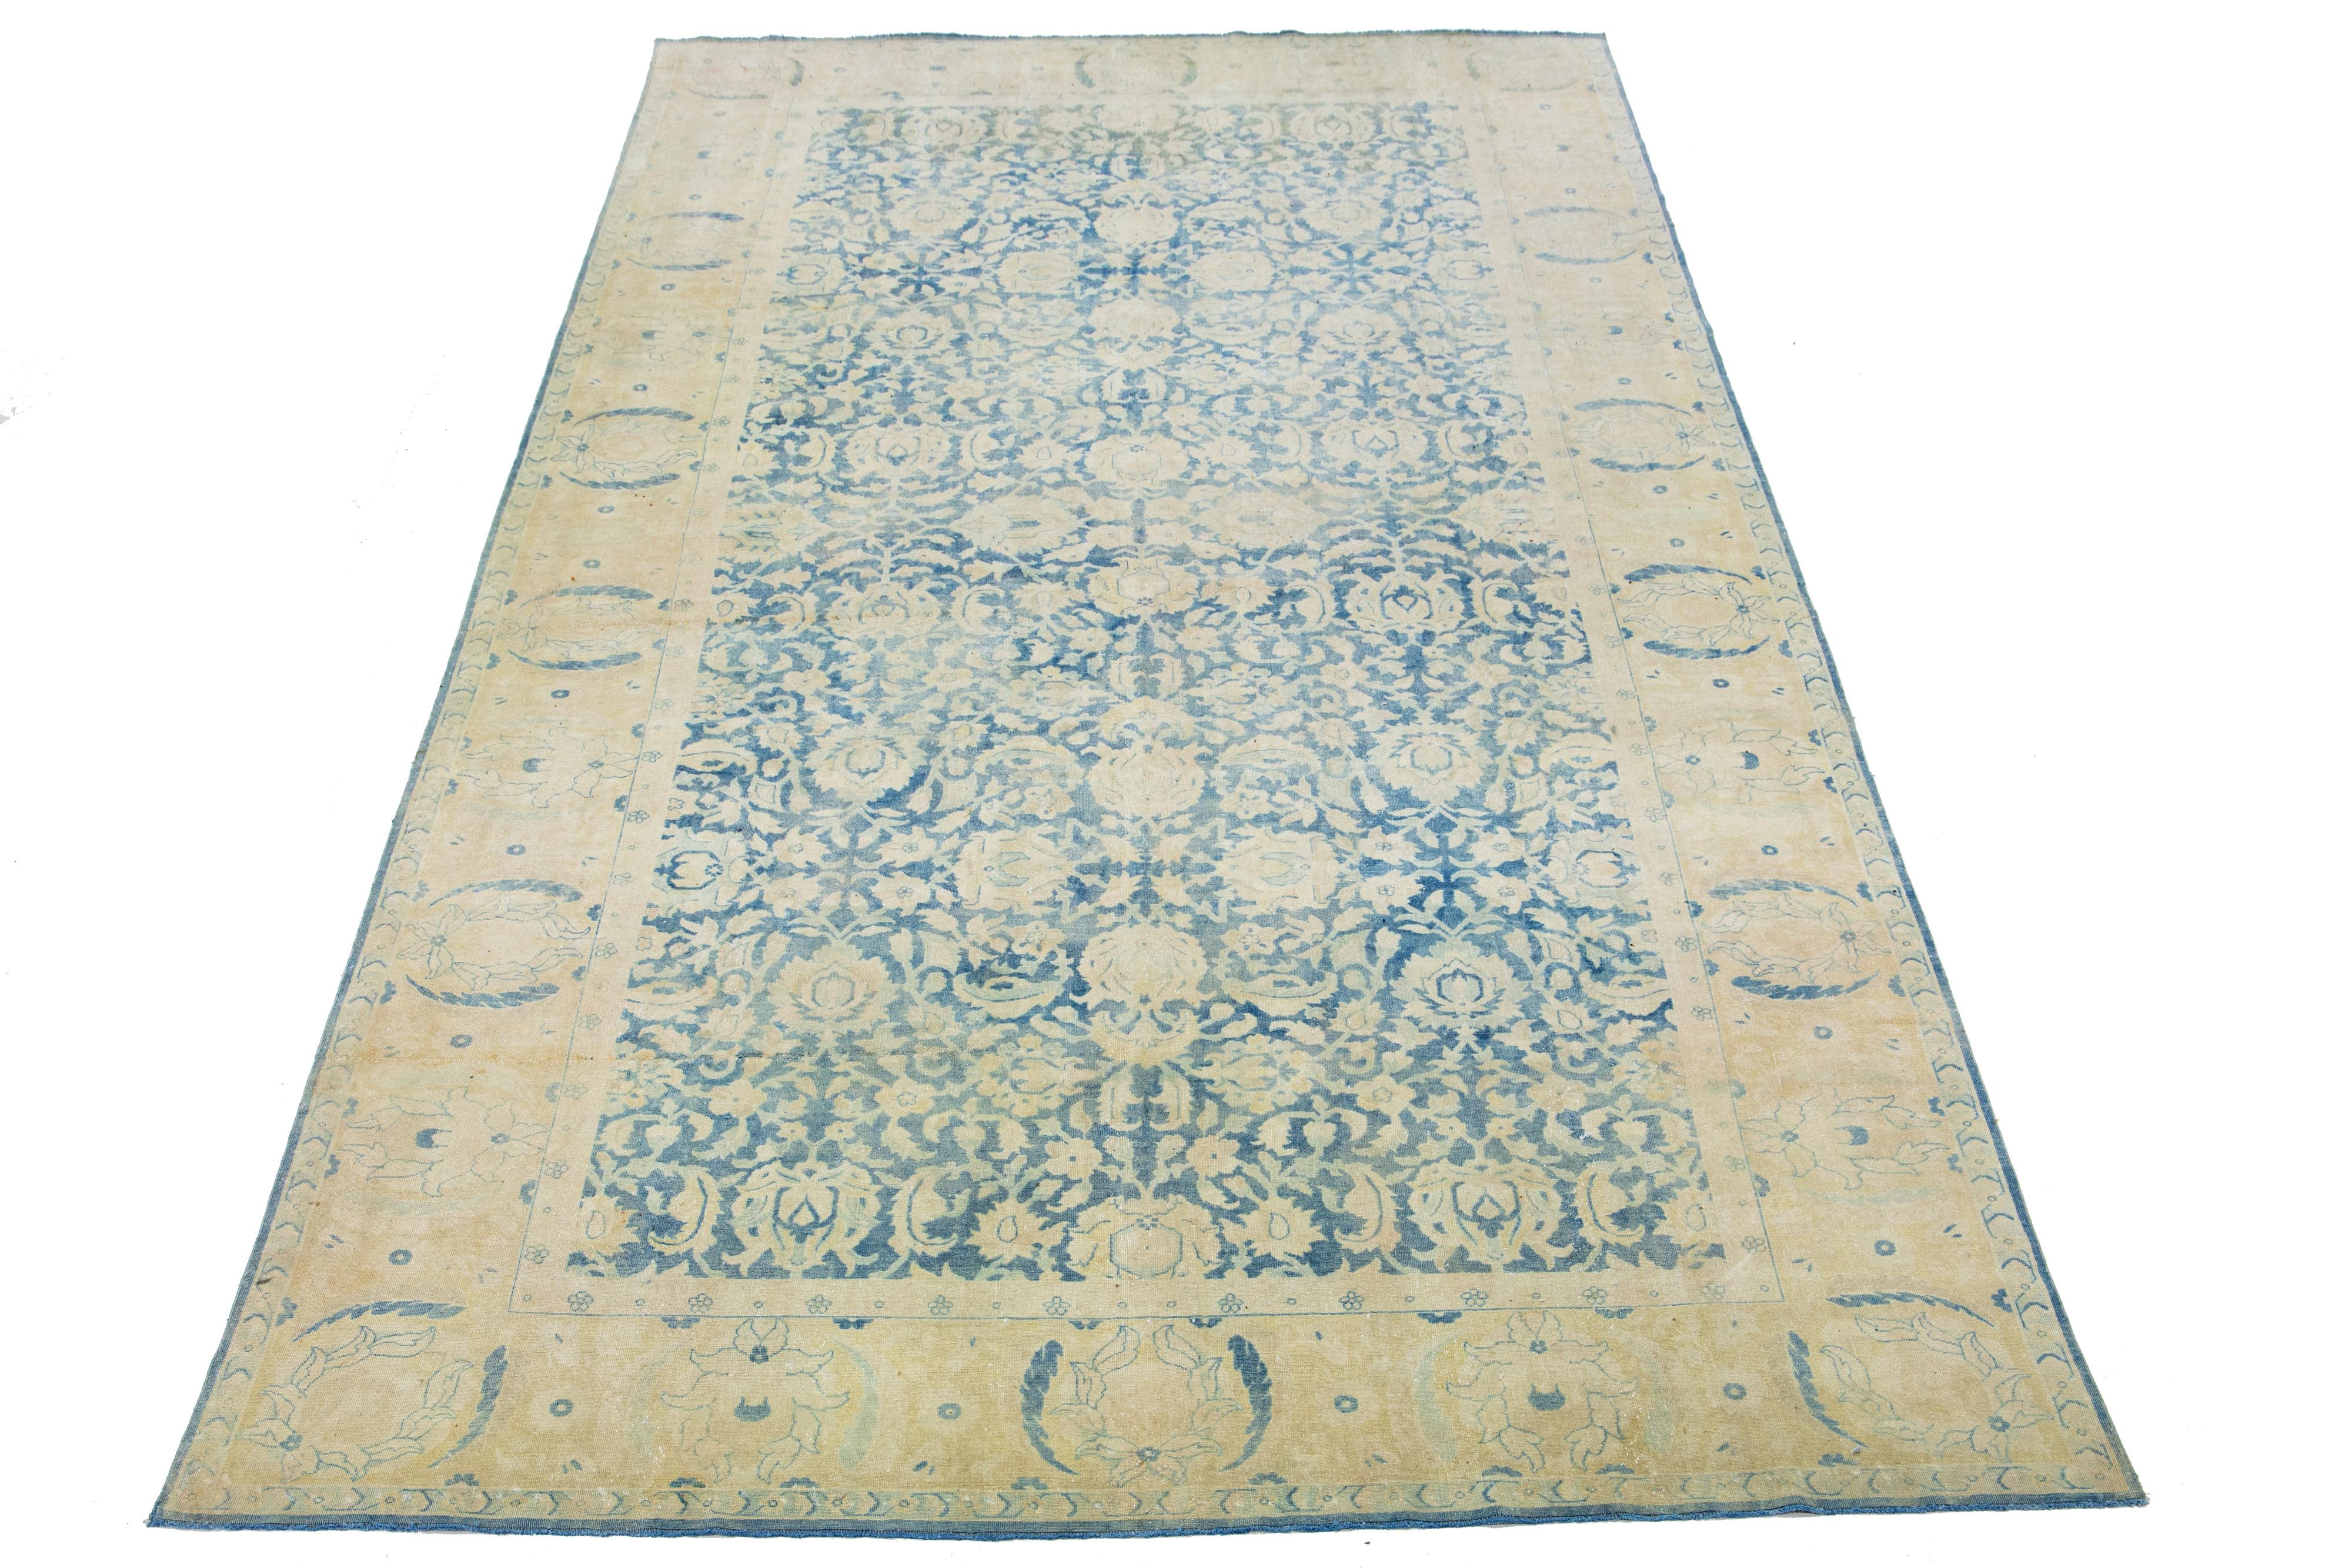 Schöner handgeknüpfter antiker Agra-Wollteppich mit blauem Farbfeld. Dieser indische Teppich hat beigefarbene Akzente in einem floralen Allover-Muster. 

Dieser Teppich misst 8'8